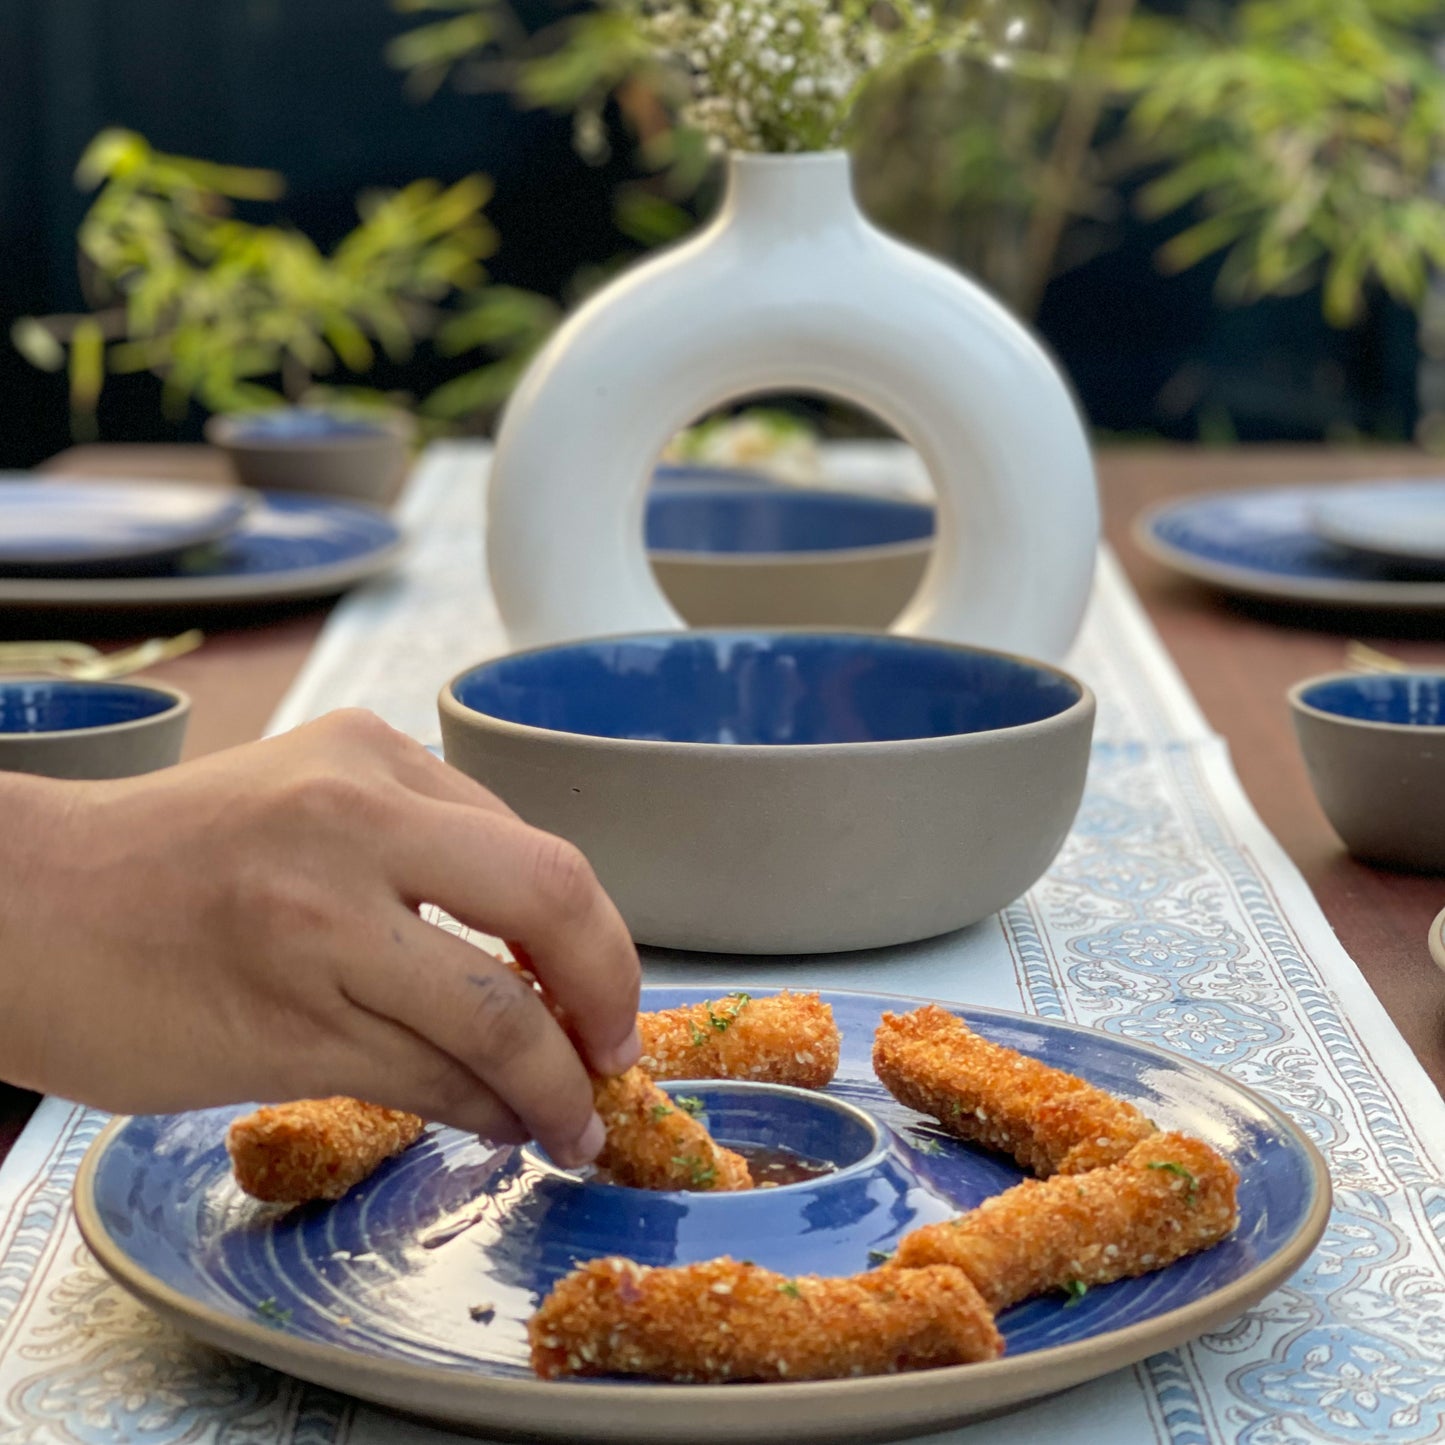 Rustic Blue Ceramic Dinner Set